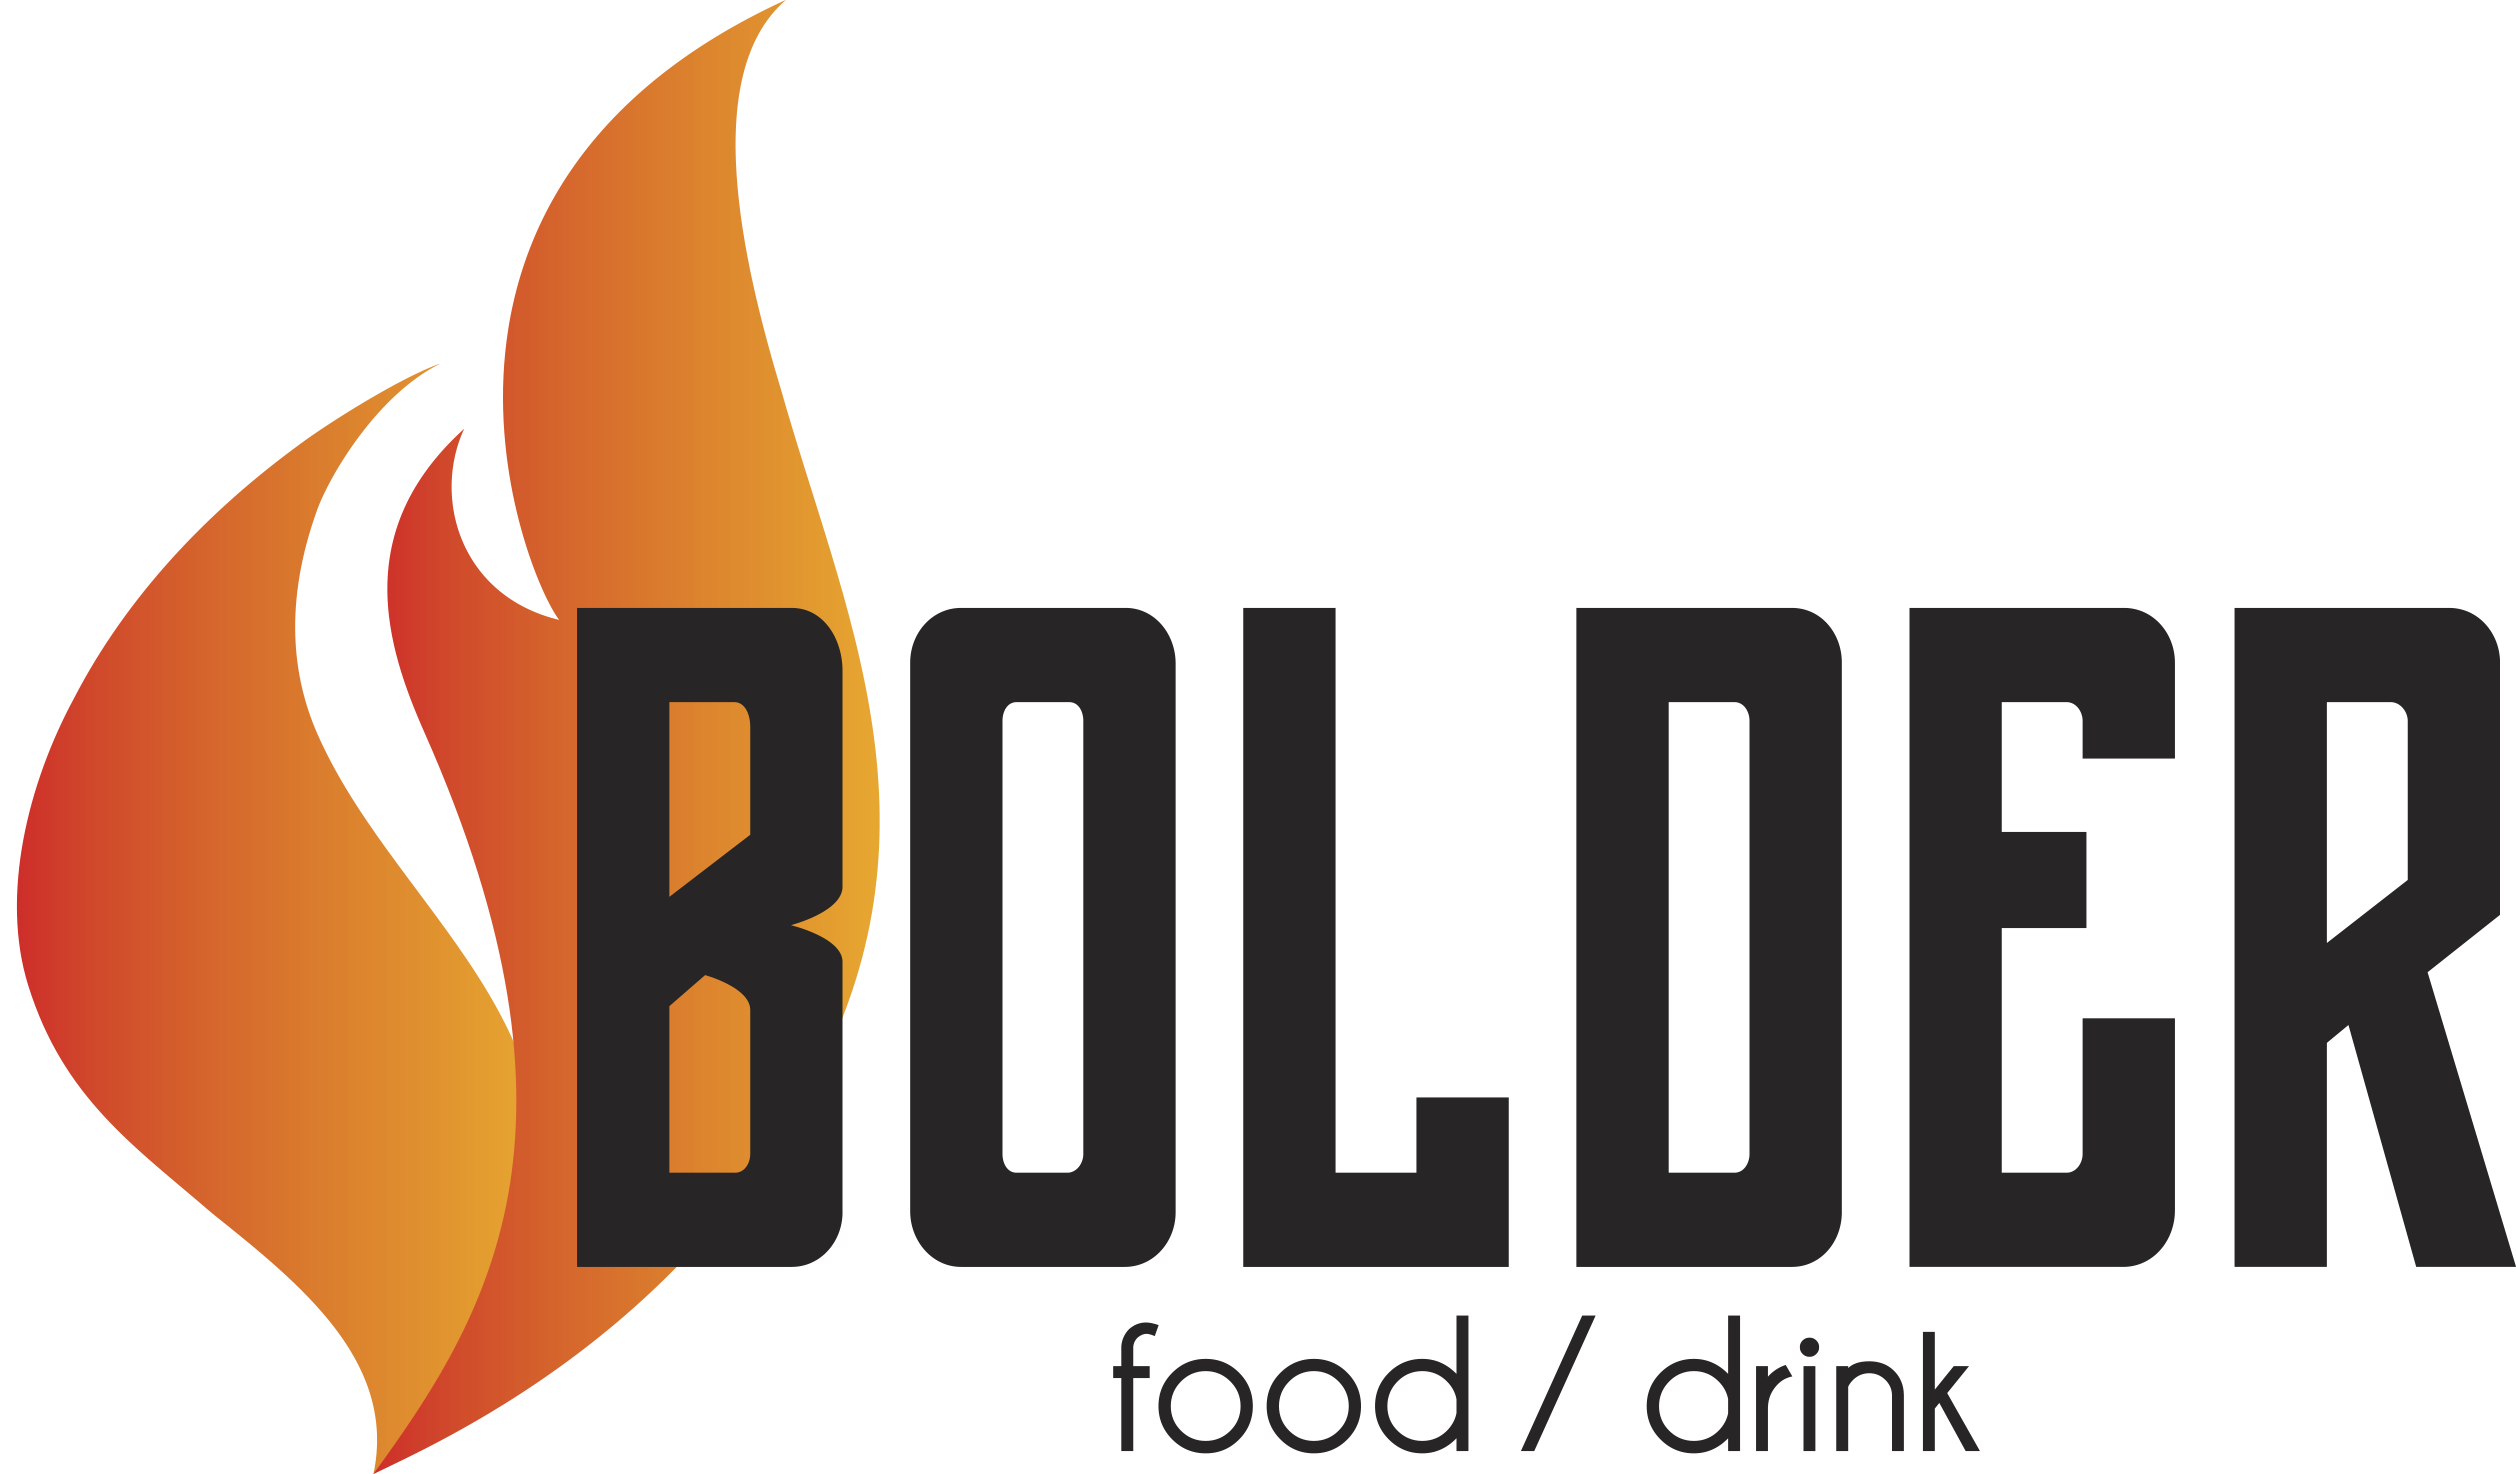 Bolder food/drink